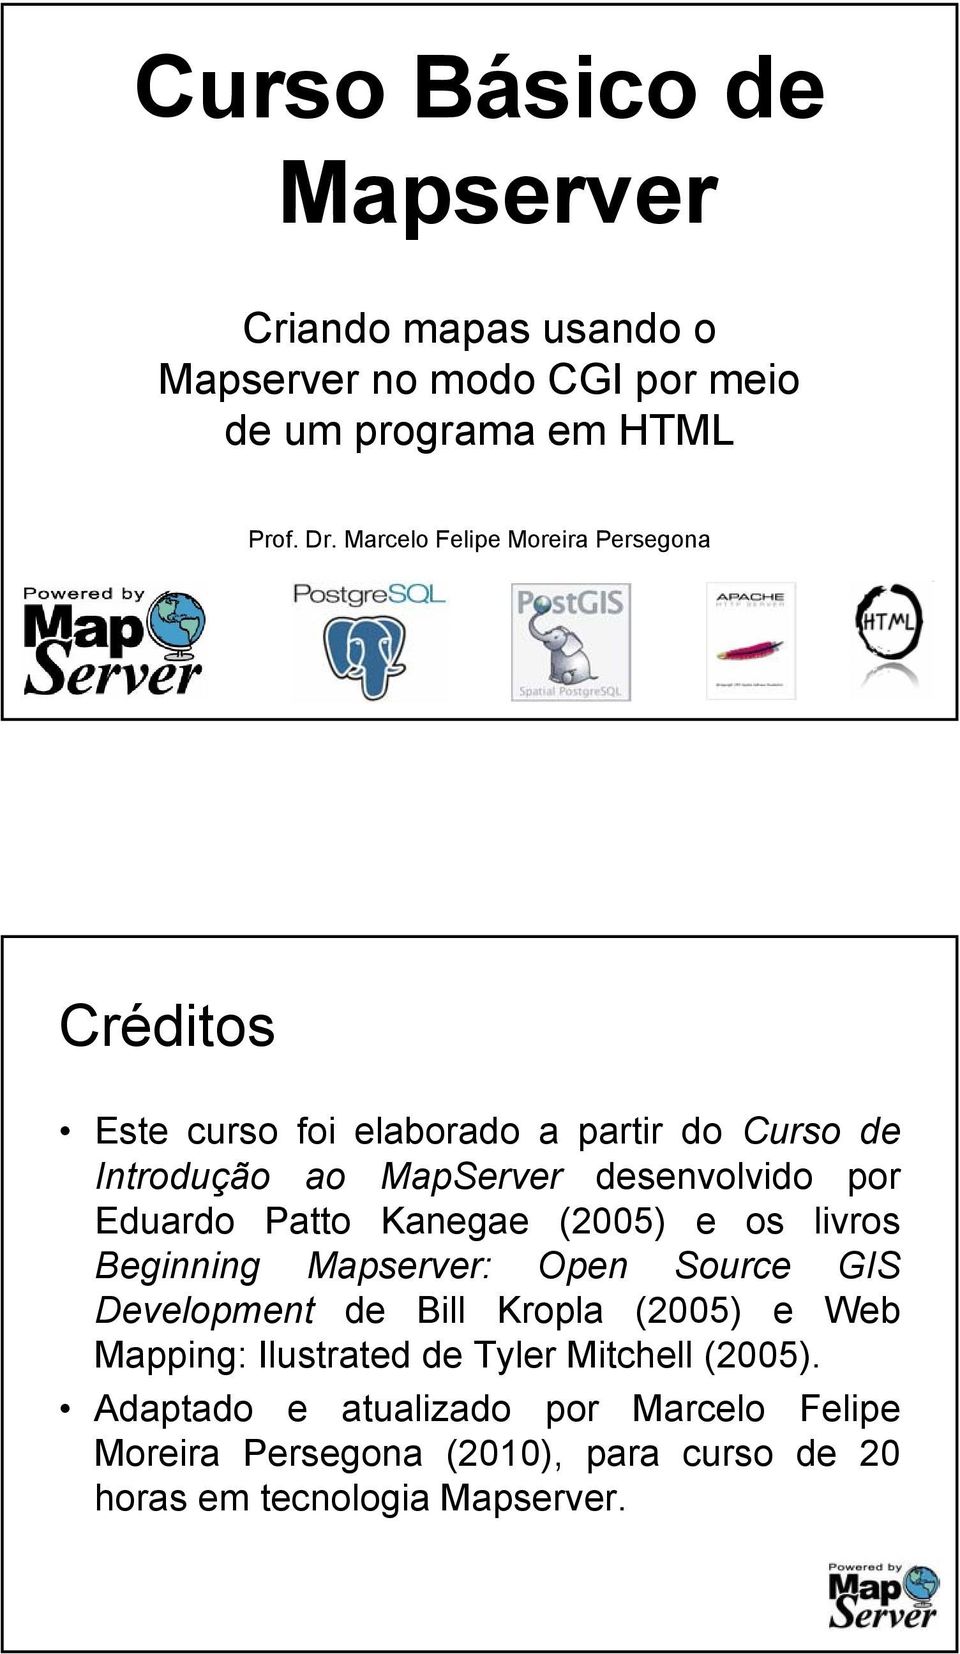 Eduardo Patto Kanegae (2005) e os livros Beginning Mapserver: Open Source GIS Development de Bill Kropla (2005) e Web Mapping: